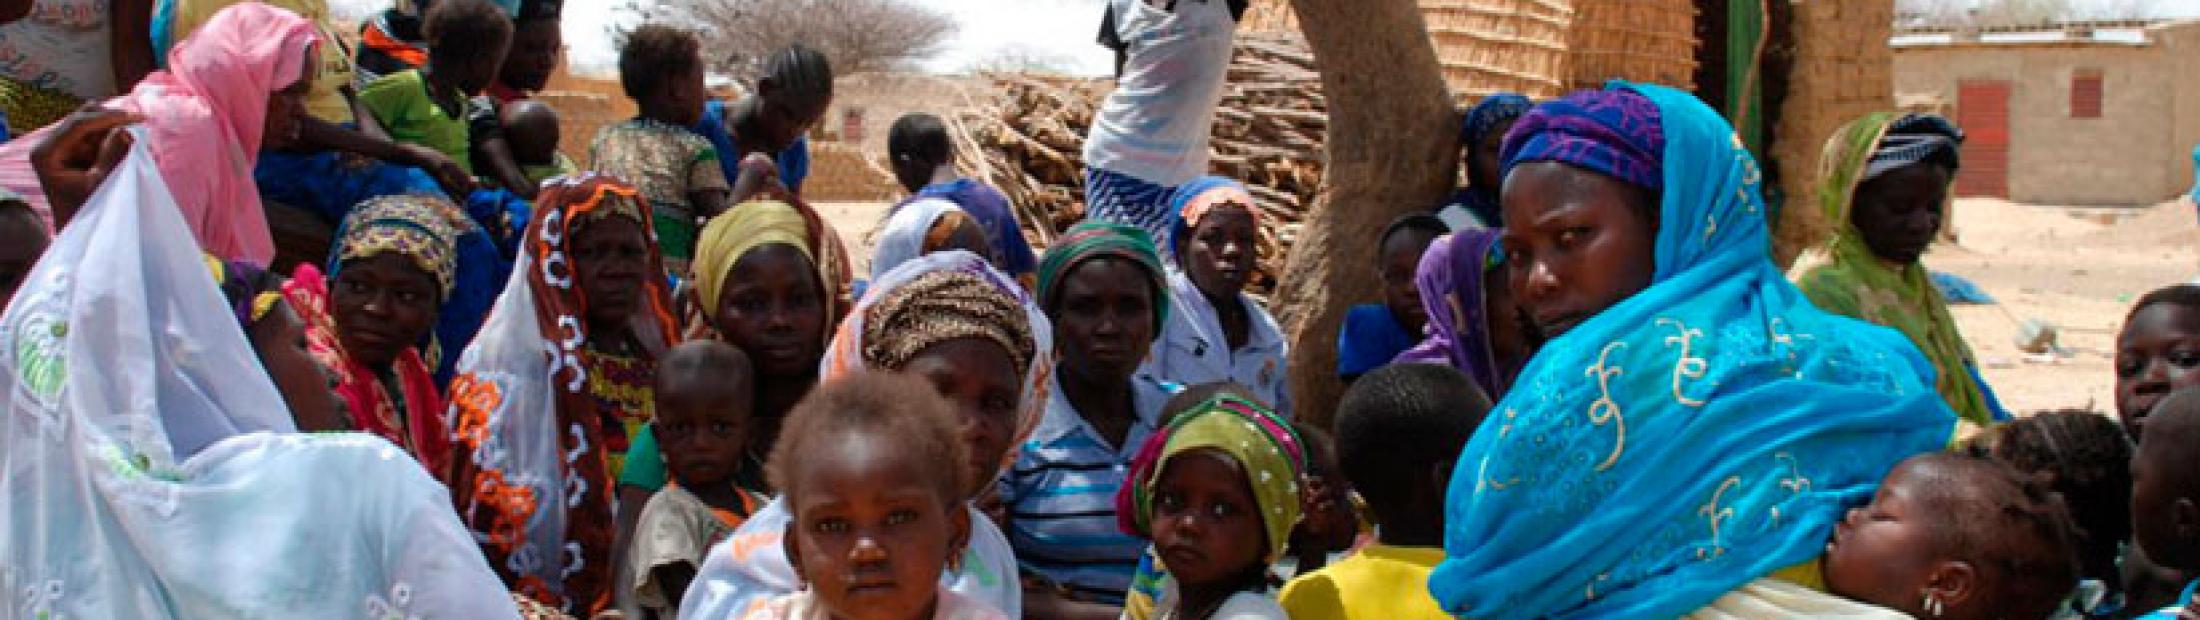 Refugiados en Mali: asesinatos que fuerzan desplazamientos